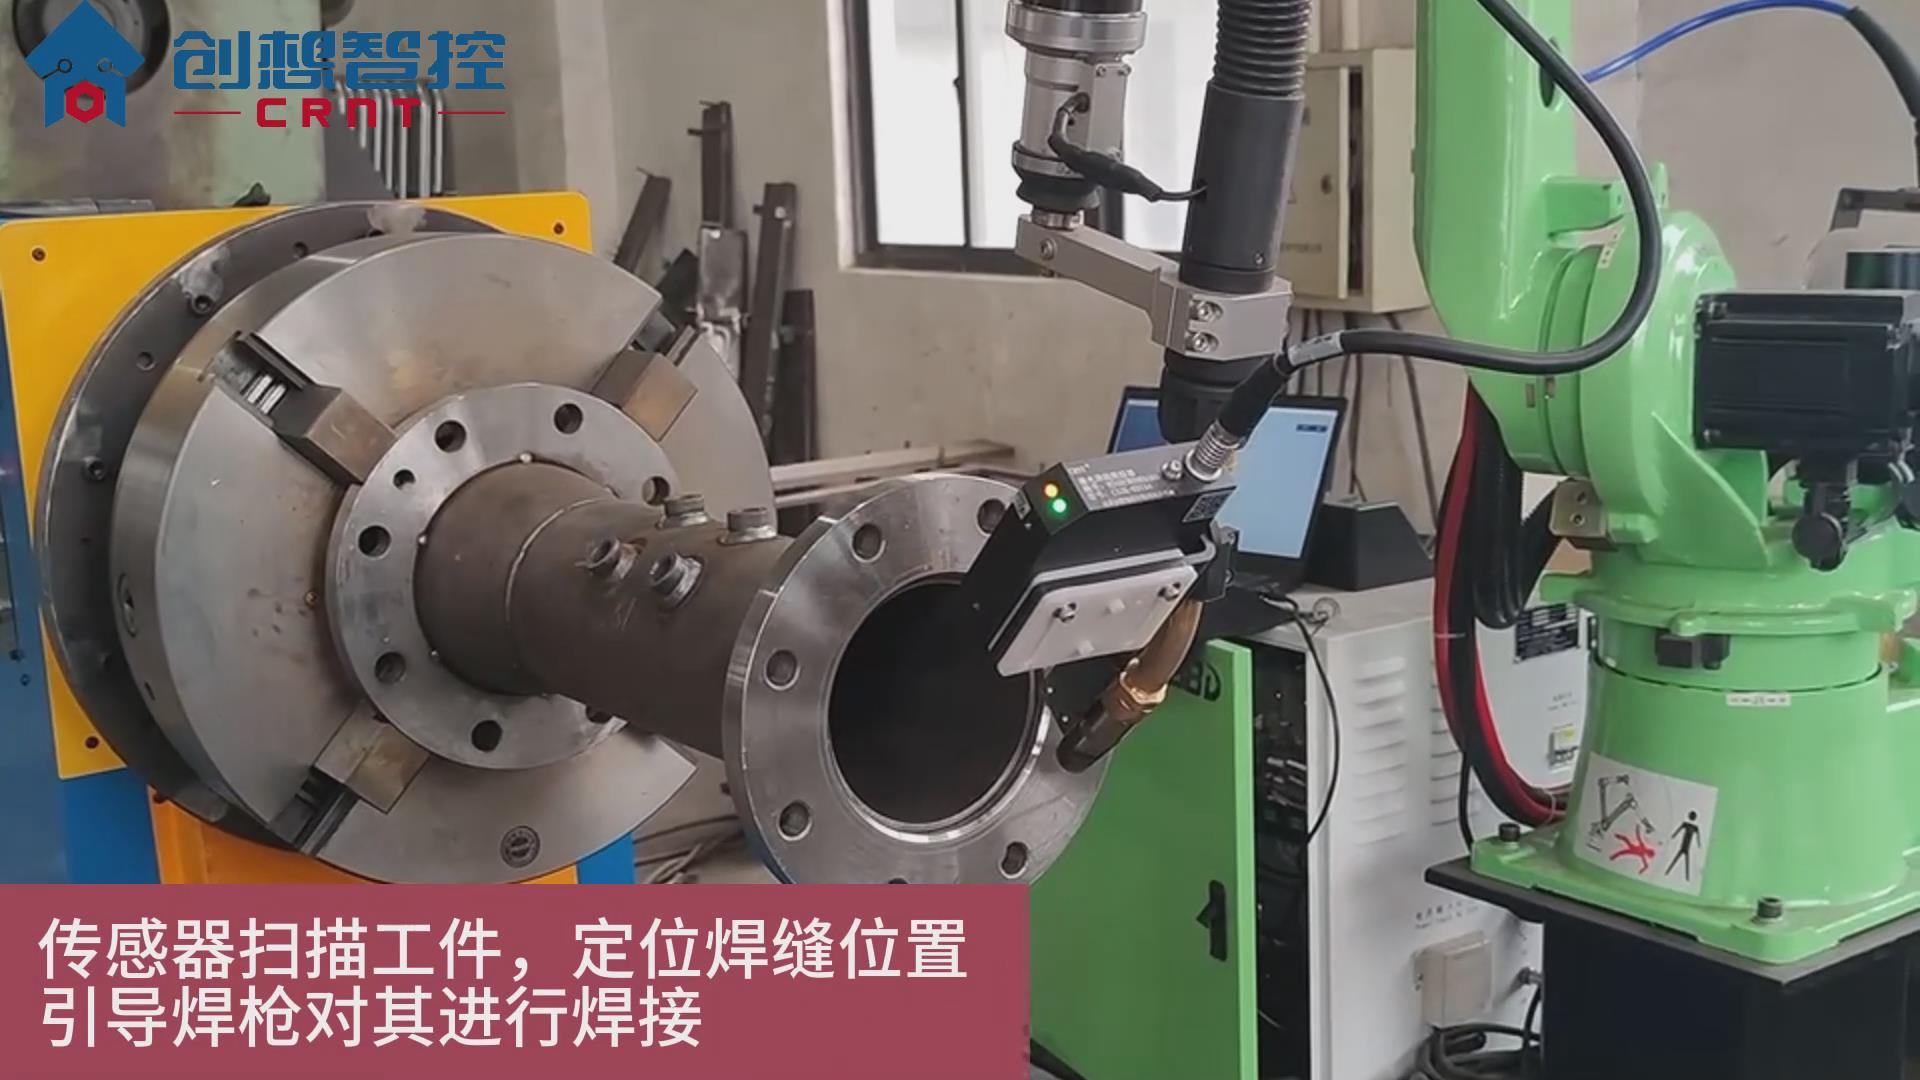 创想焊缝跟踪系统在尔必地机器人自适应焊接中的应用案例